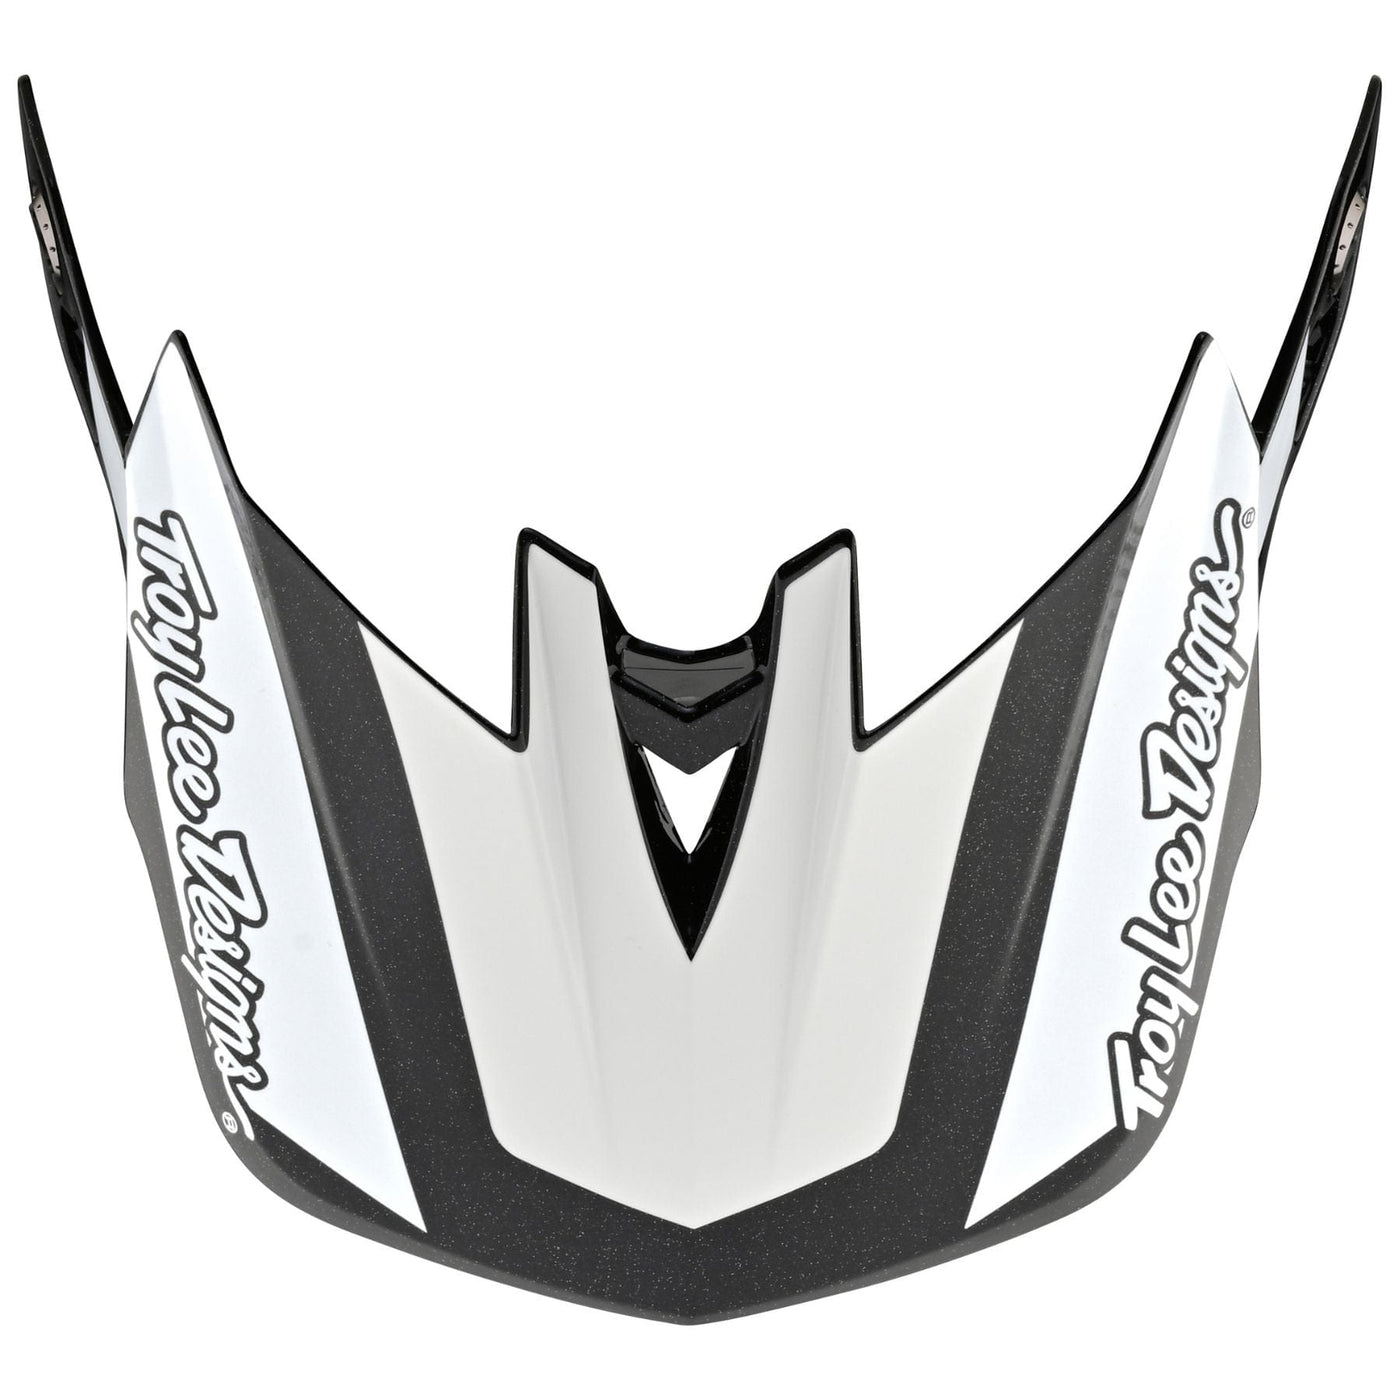 Troy Lee Desgins D4 Carbon Helmet Visor - Team Gold